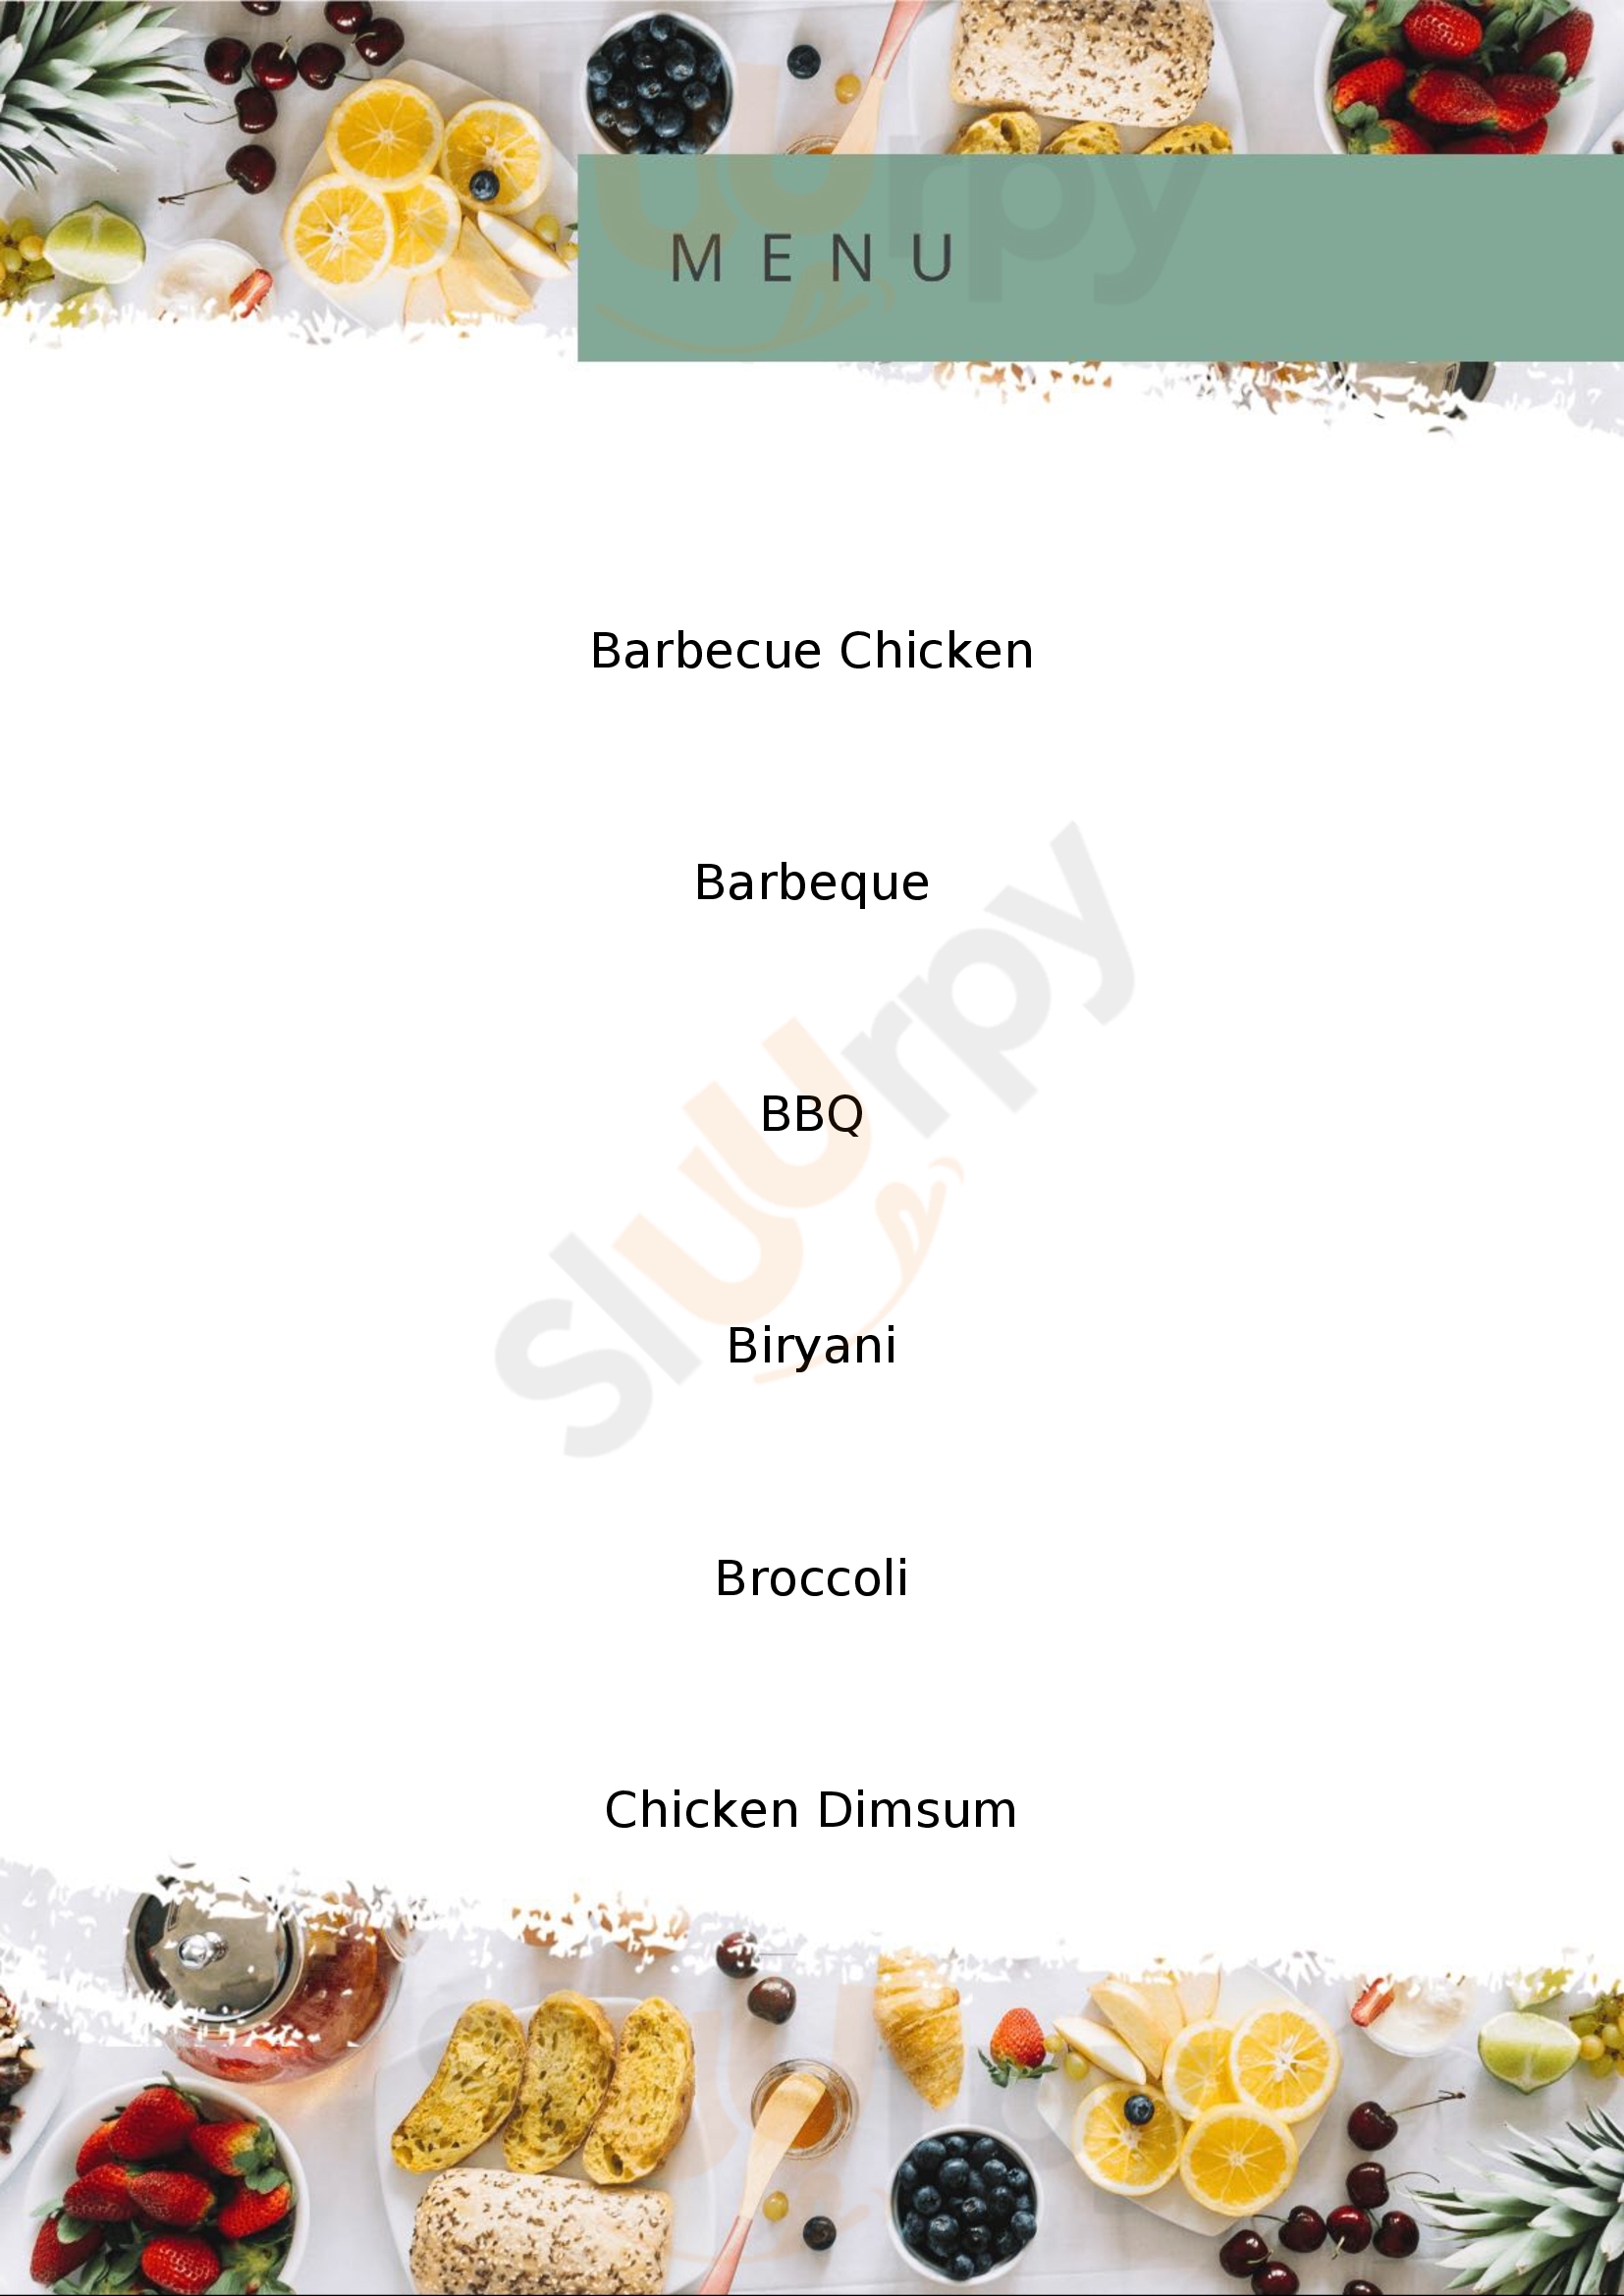 Dino's Barbecue & Grill Bengaluru Menu - 1